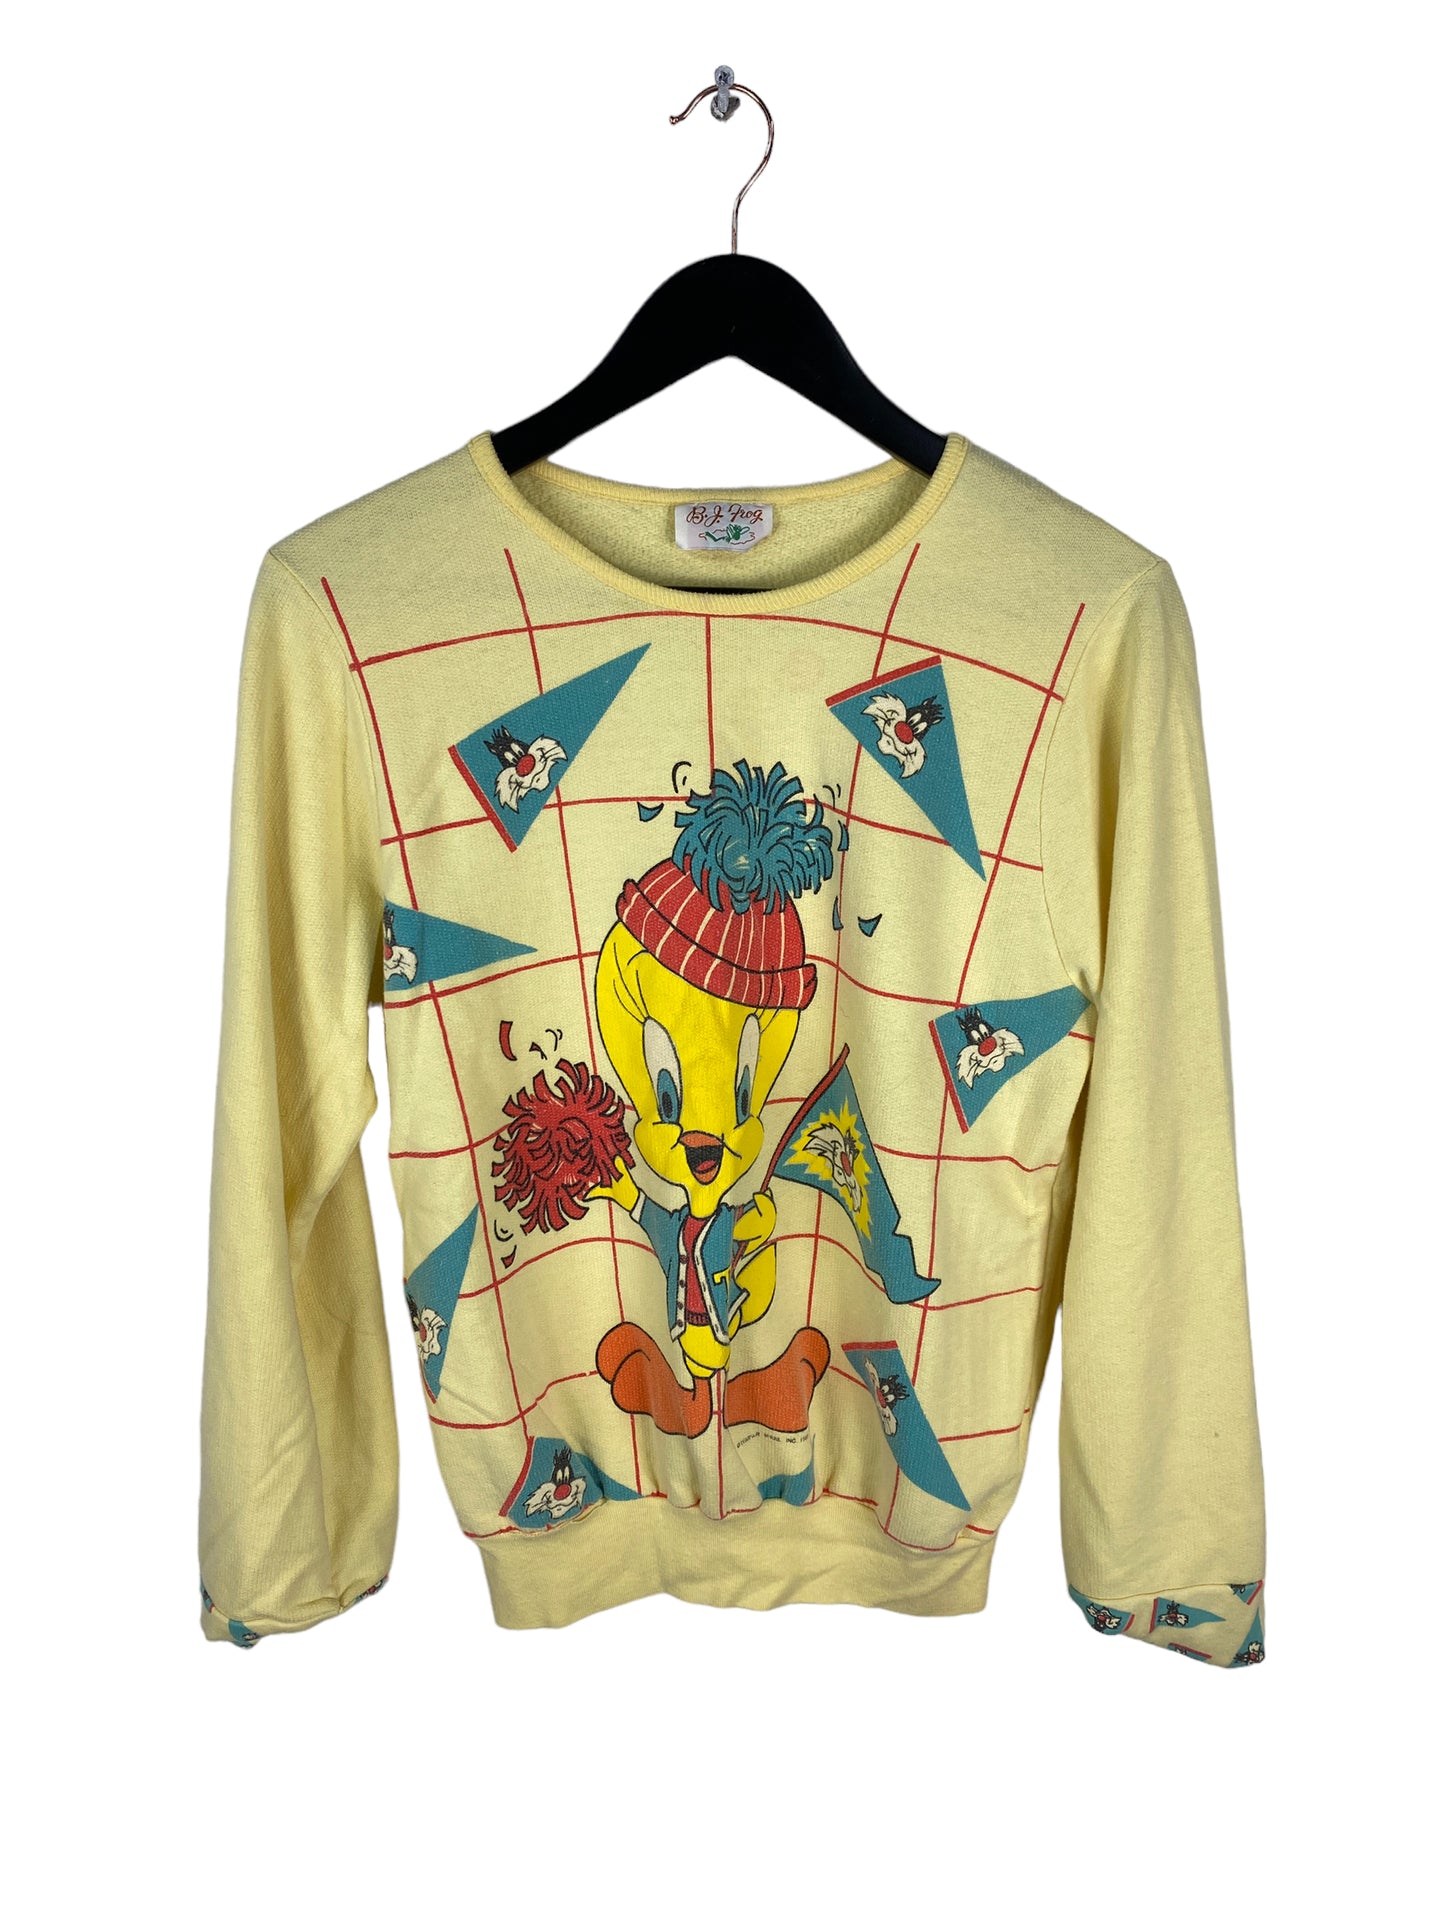 VTG Wmn's Tweety Bird 1980's Sweater Sz M